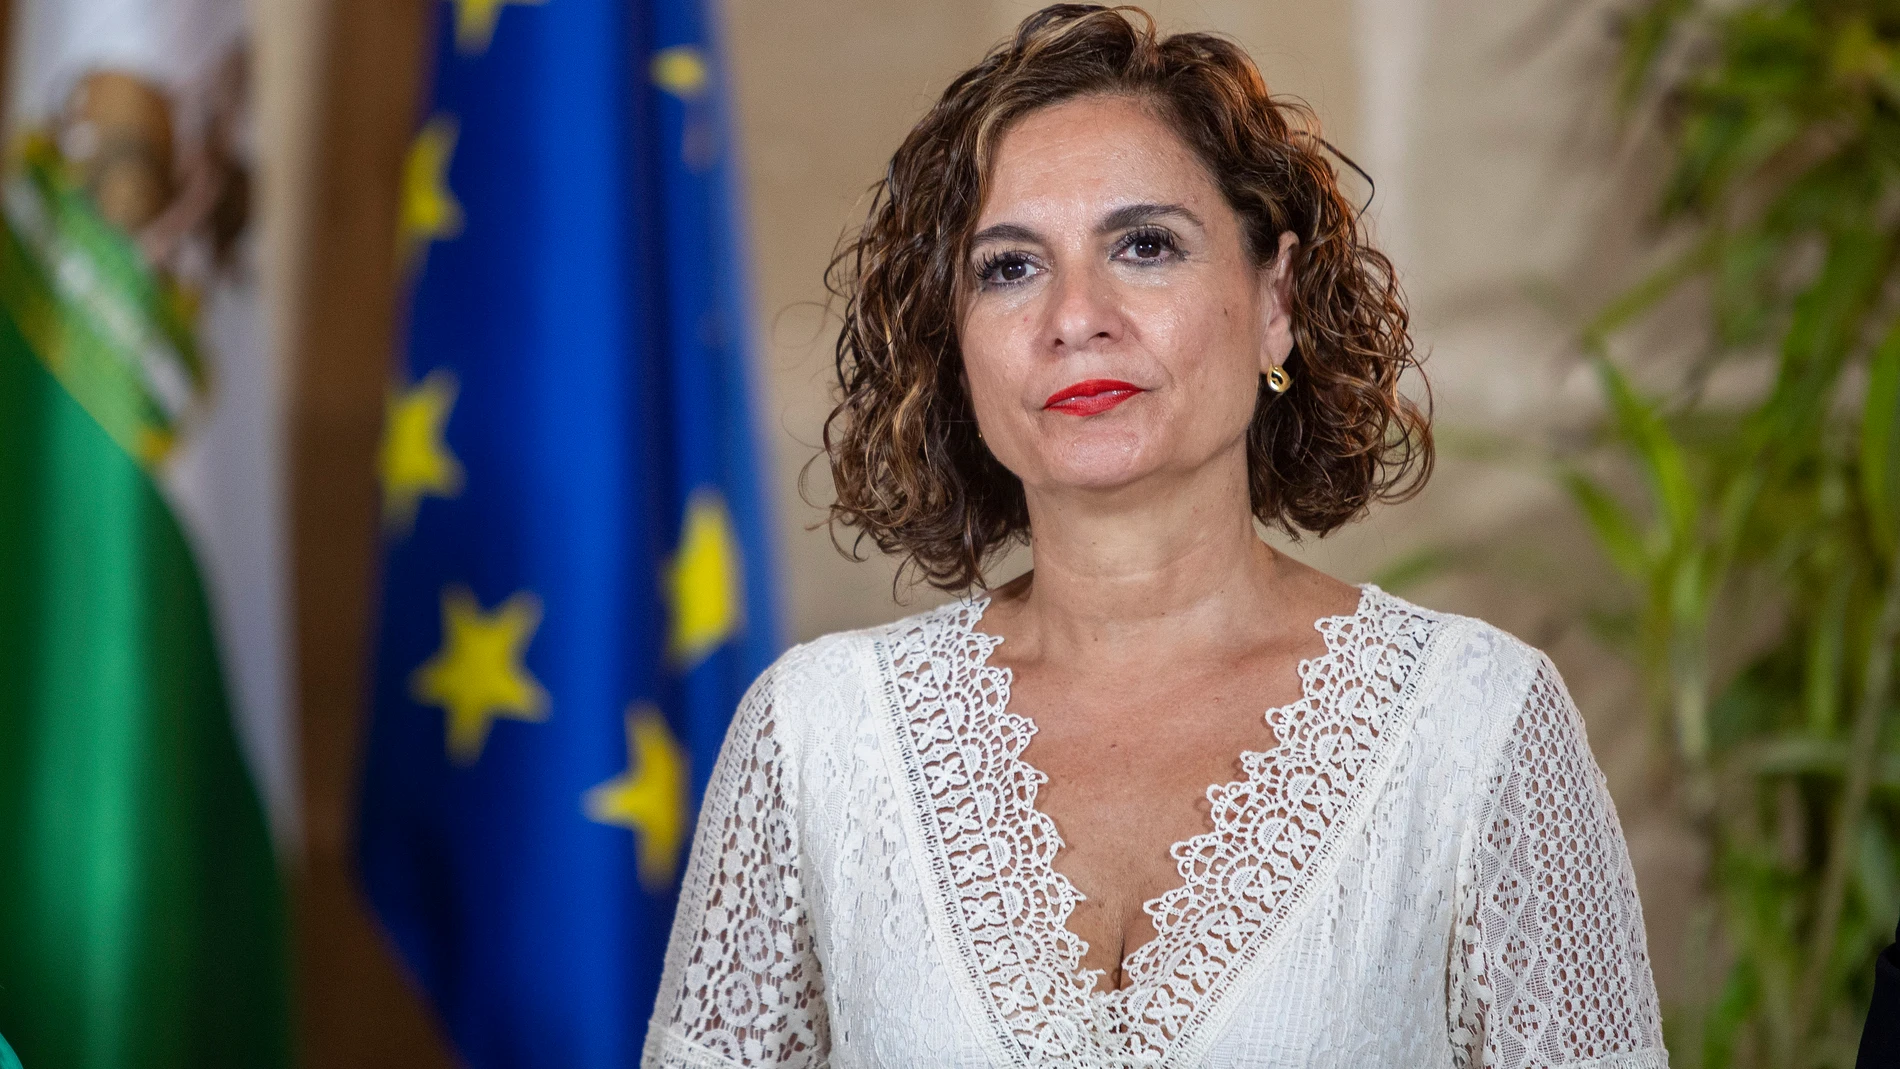 La ministra de Hacienda y Función Pública, María Jesús Montero durante su visita al Ayuntamiento de Jerez de la Frontera